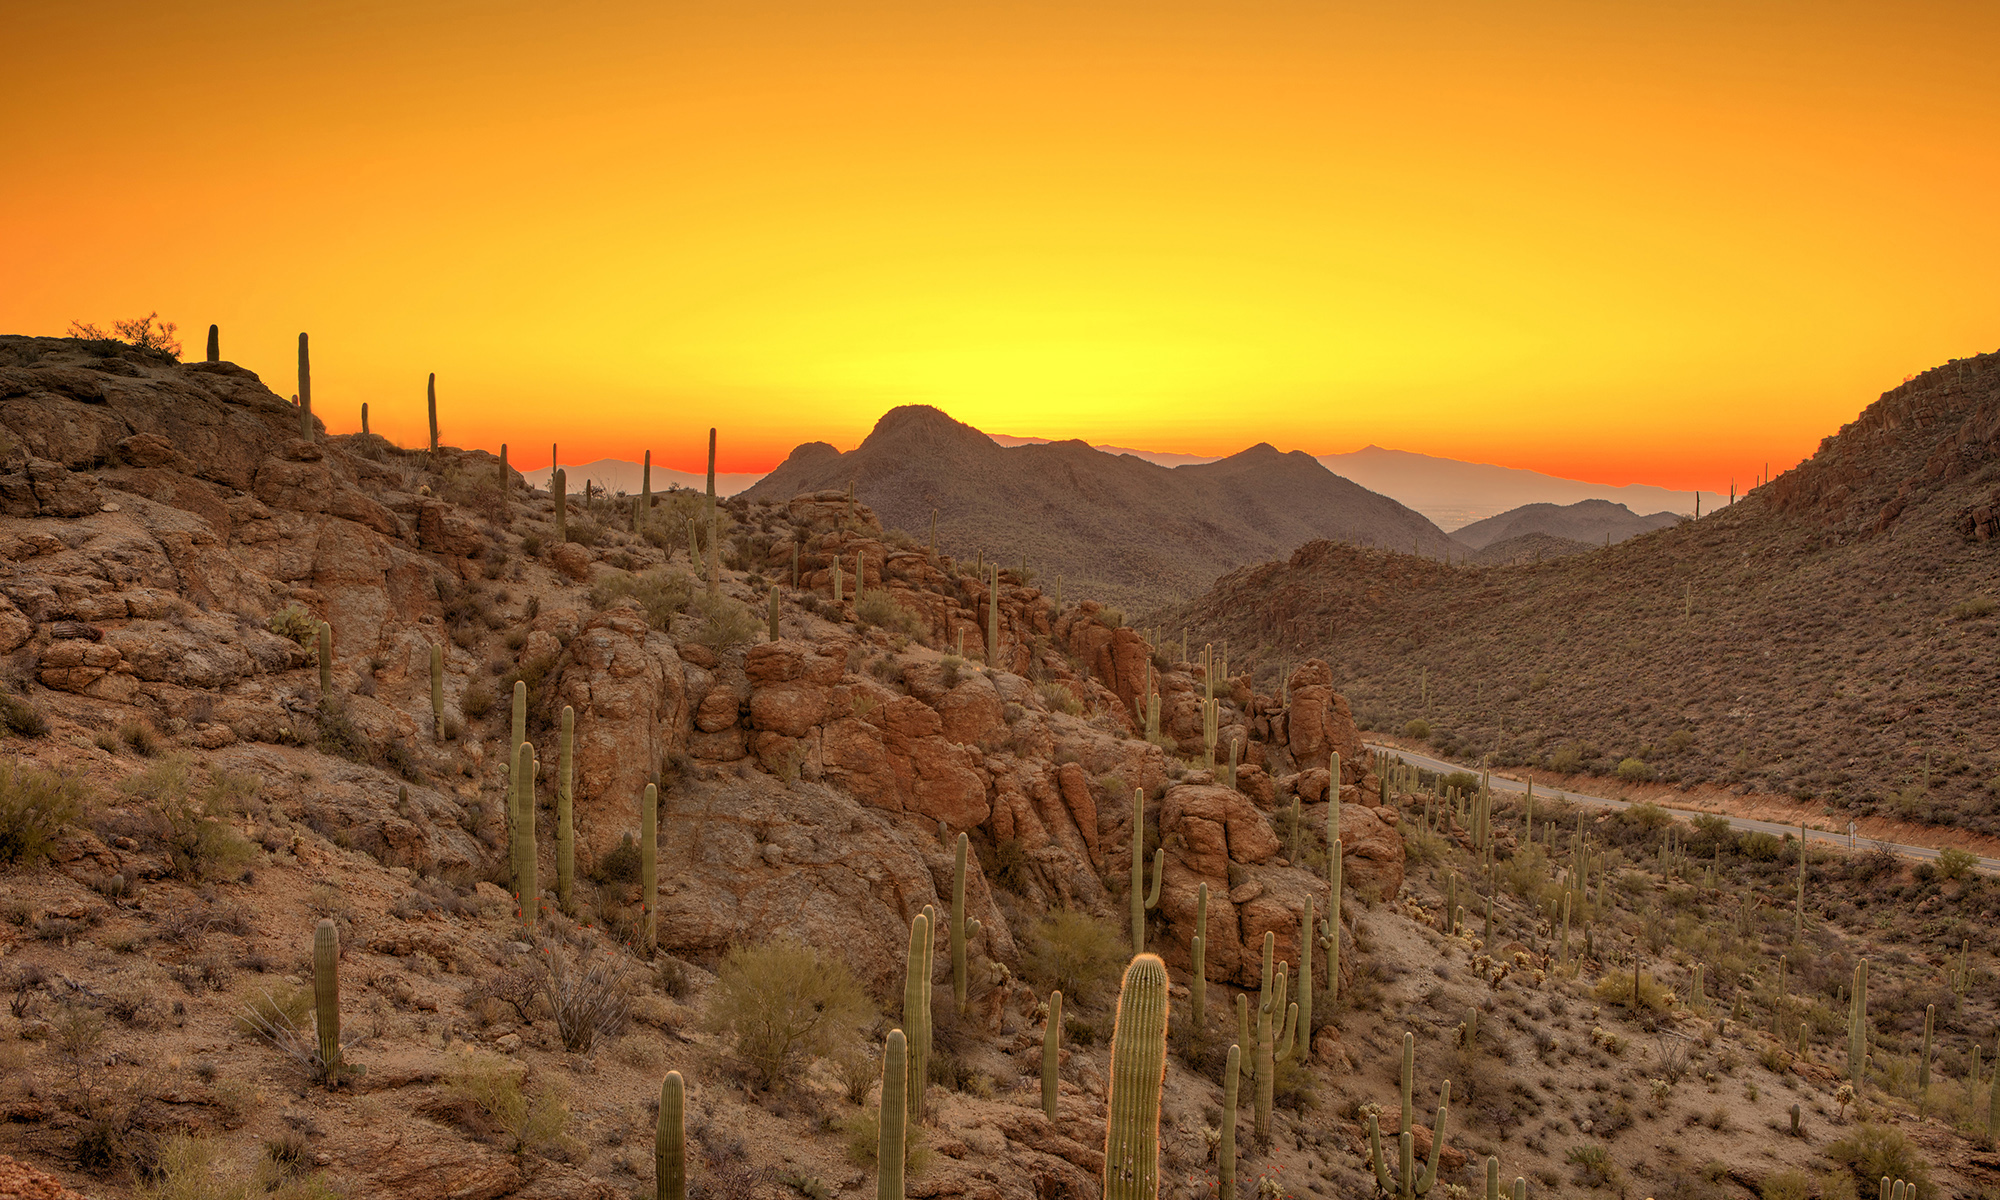 Desert sunset image for SLSA 2017